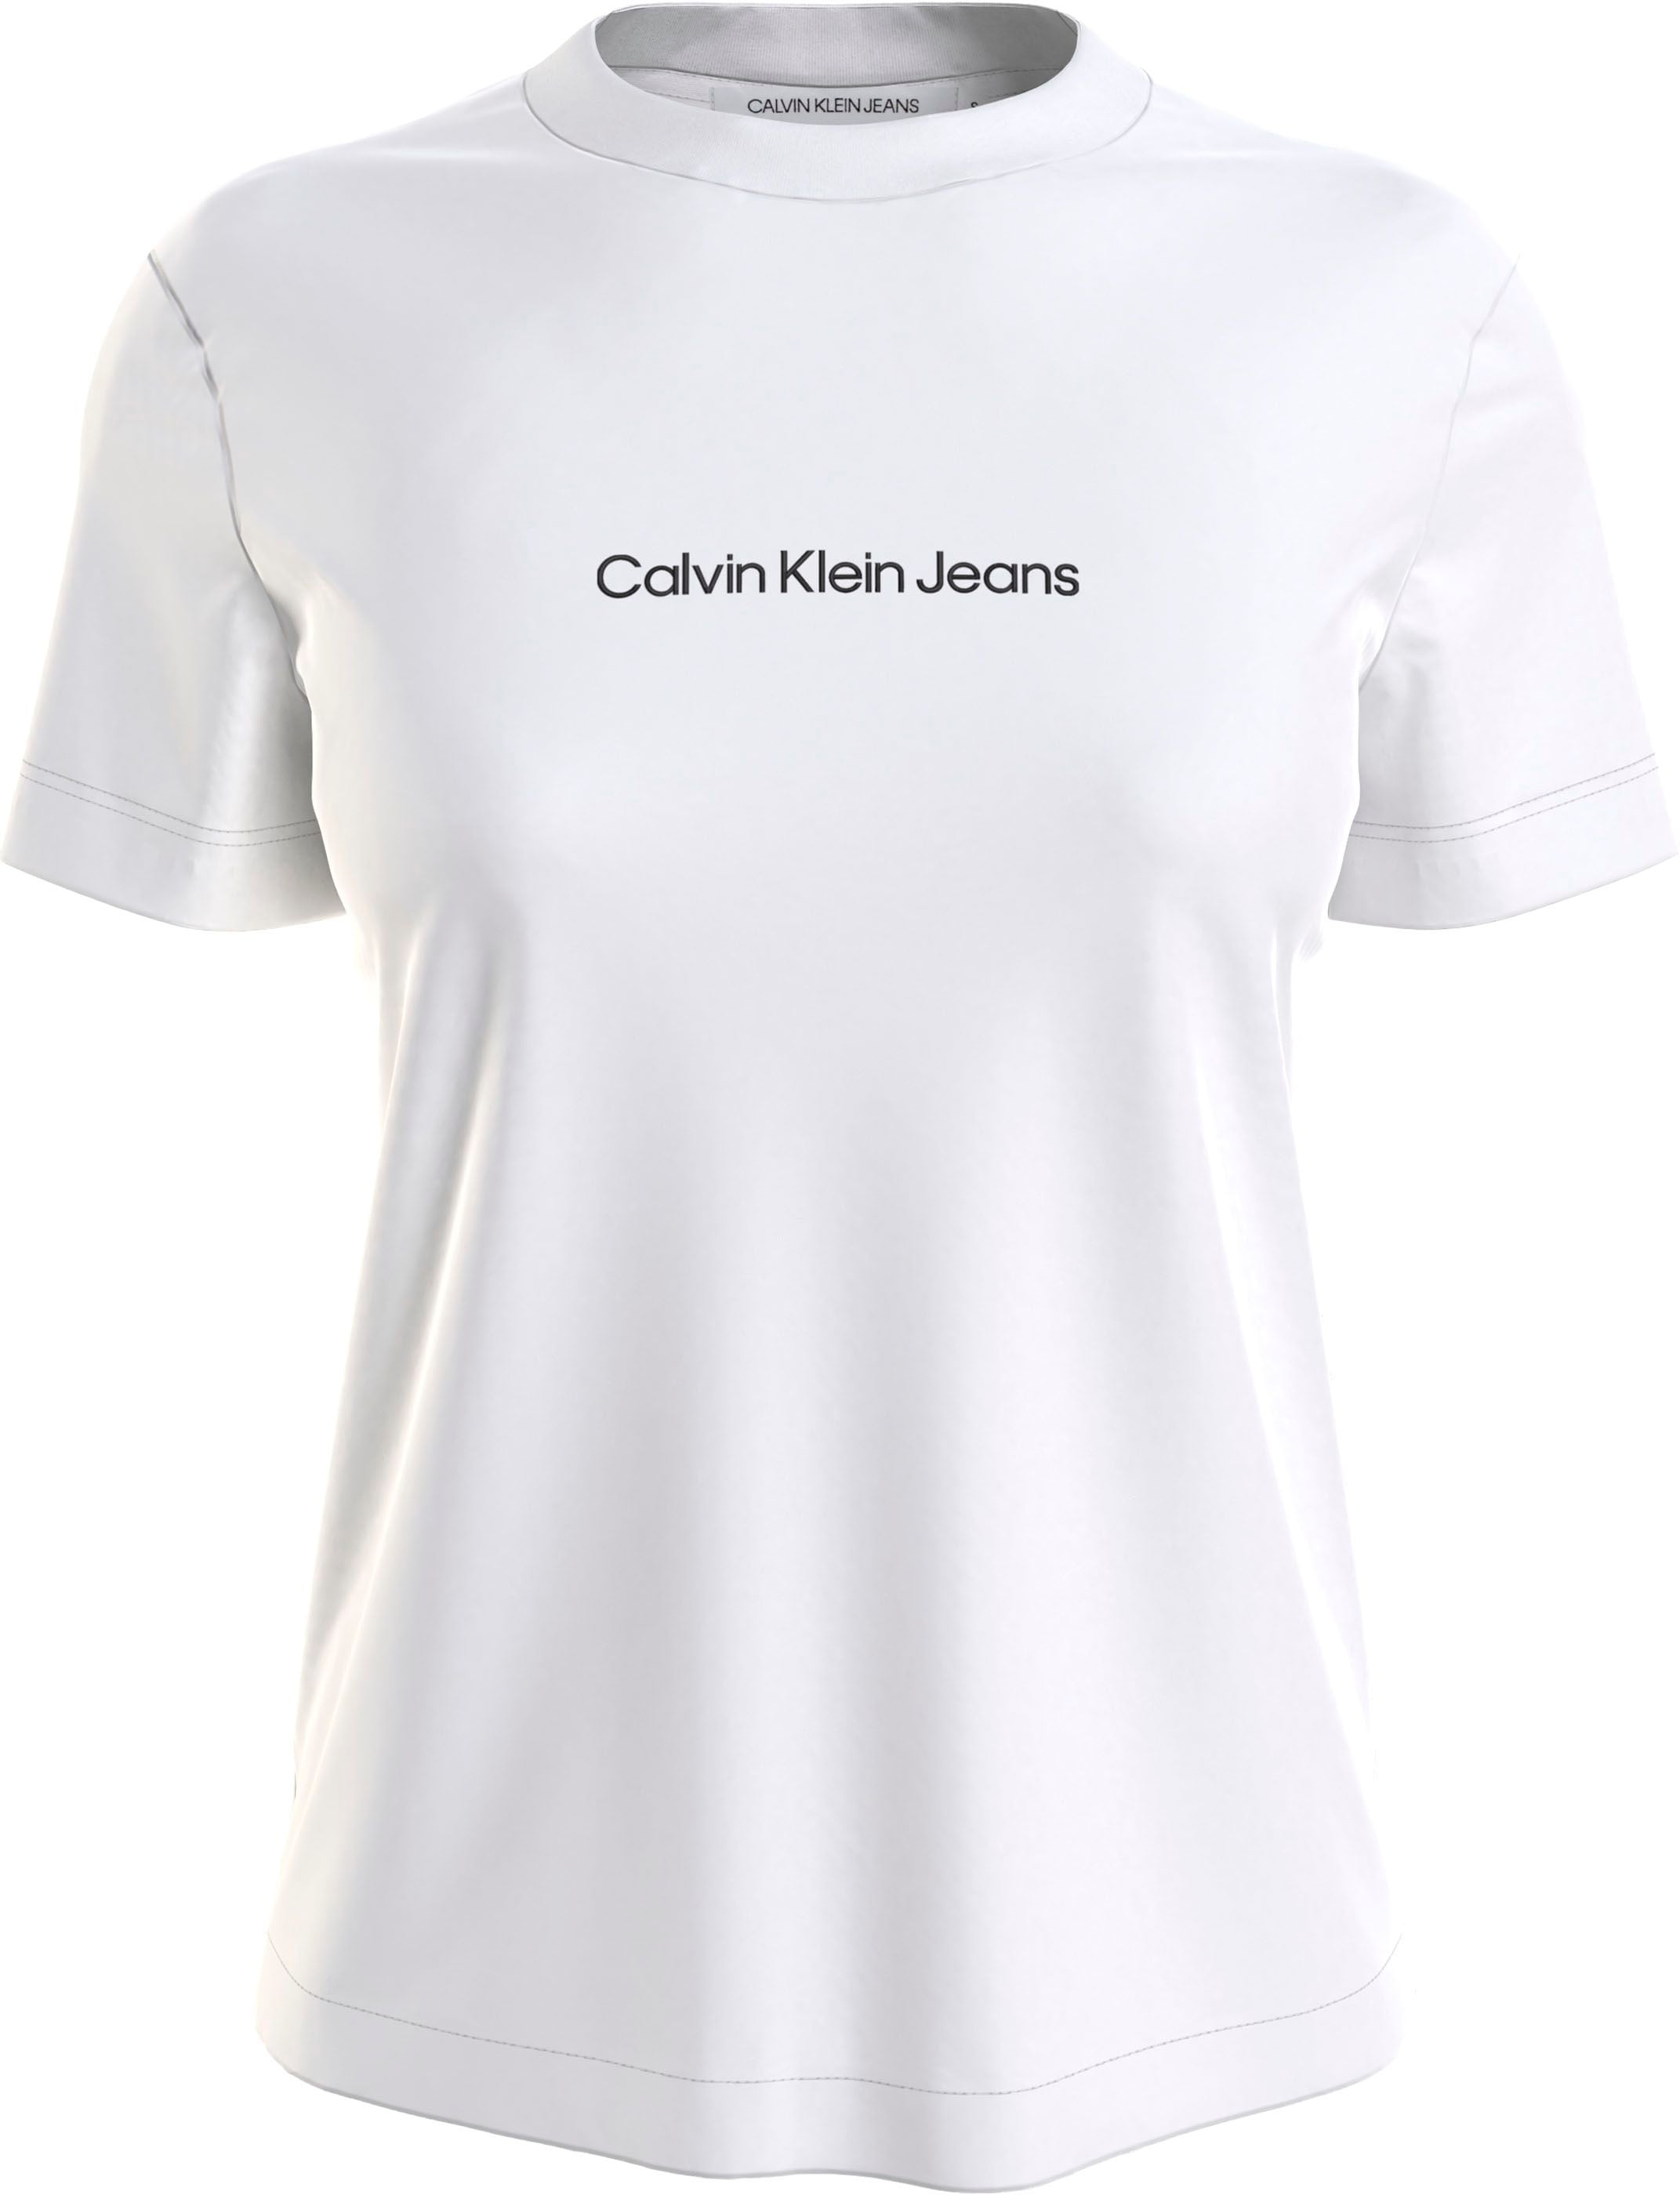 [Versand täglich außer an Feiertagen] ♕ Calvin Klein Jeans Baumwolle reiner T-Shirt, auf aus versandkostenfrei